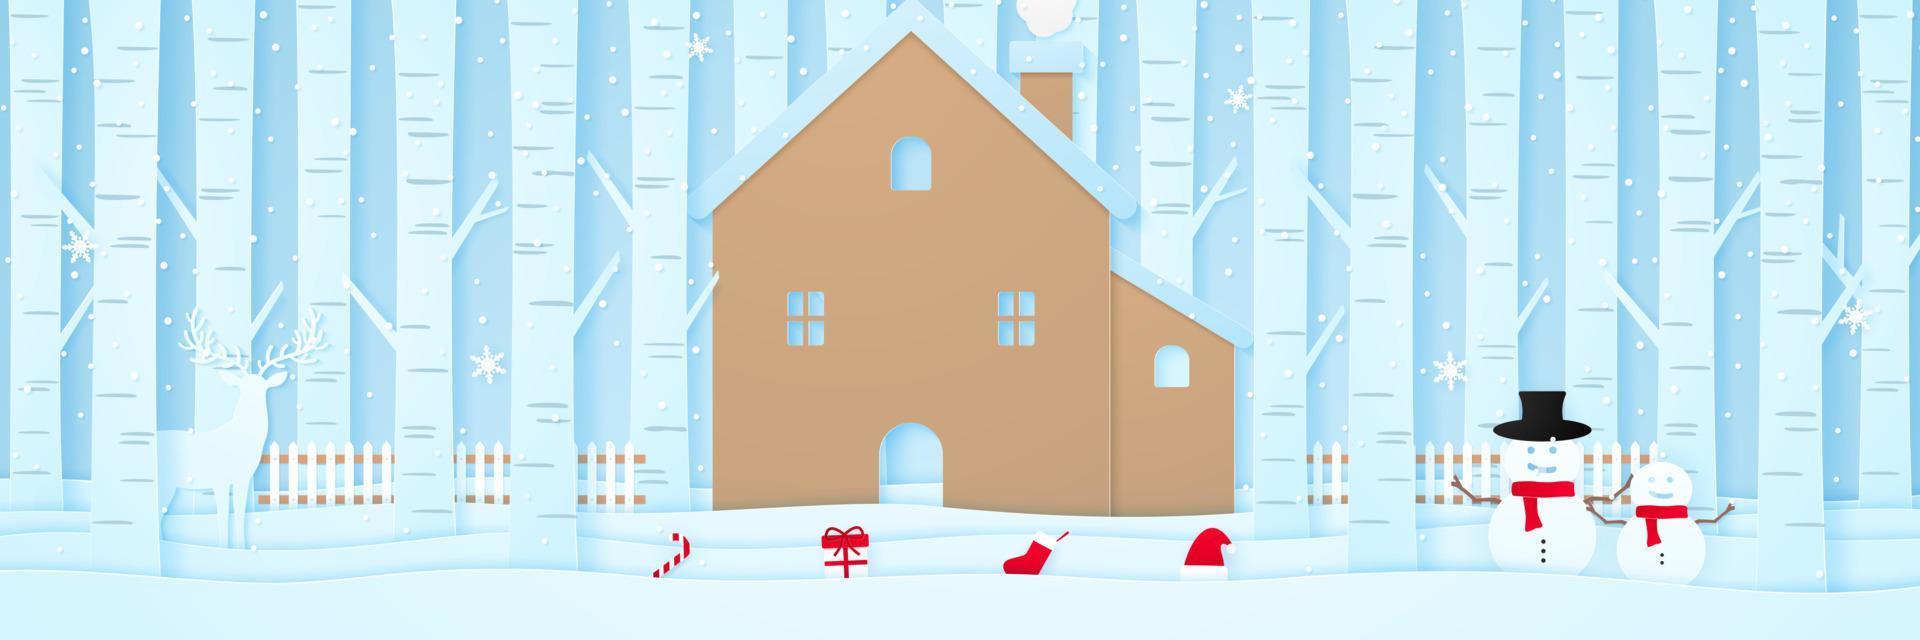 buon natale, casa con renne, pupazzo di neve, roba natalizia, recinzione e alberi di pino sulla neve nel paesaggio invernale con neve che cade, stile arte carta vettore